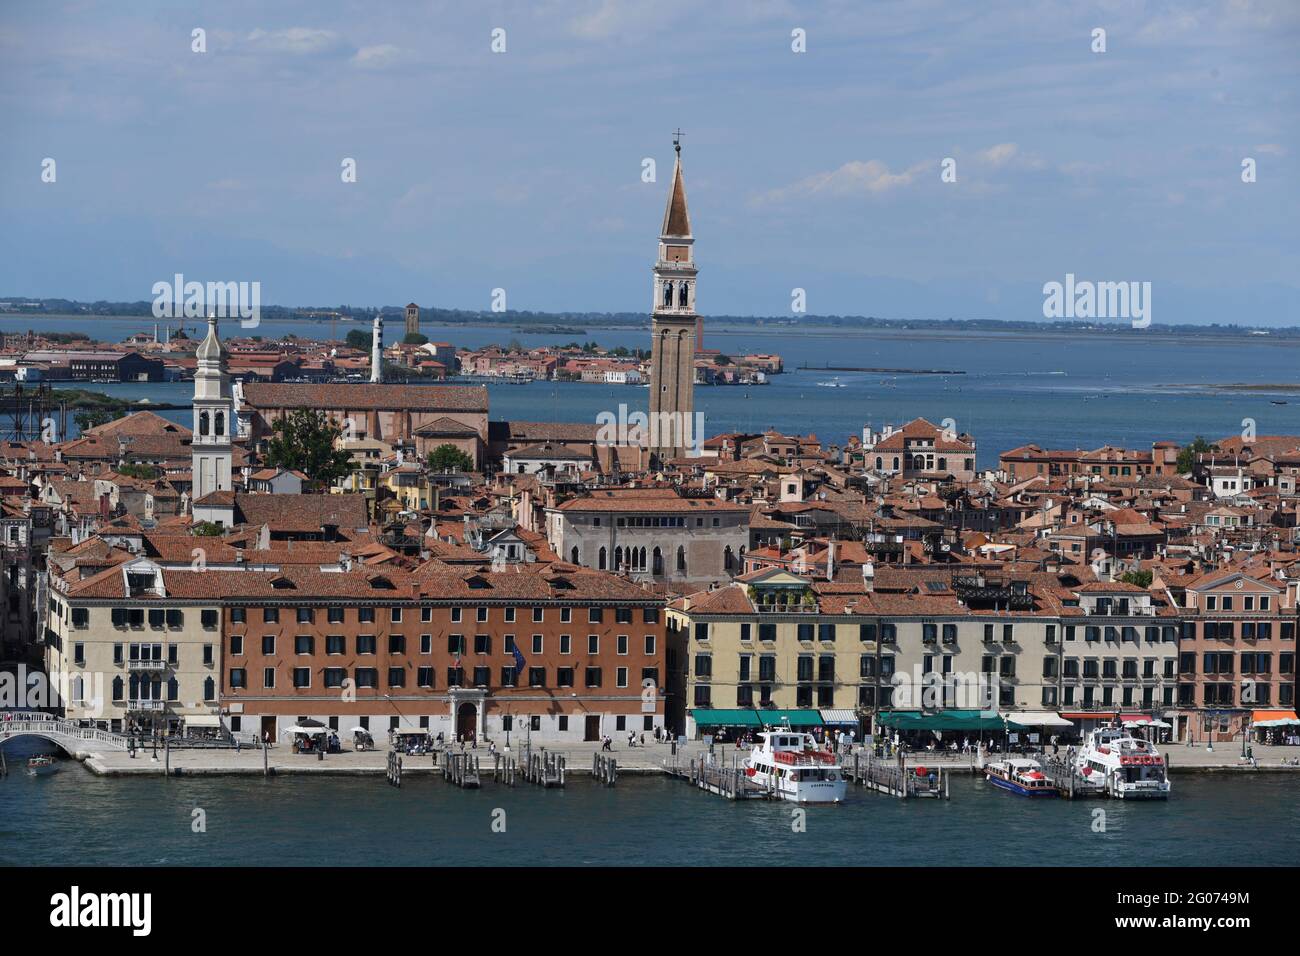 Vista su Venezia - Blick auf die anderen Inseln mit menschenleeren Strassen von Venedig vom Turm von San Giorgio maggiore nach Ende des Lock Down Foto Stock